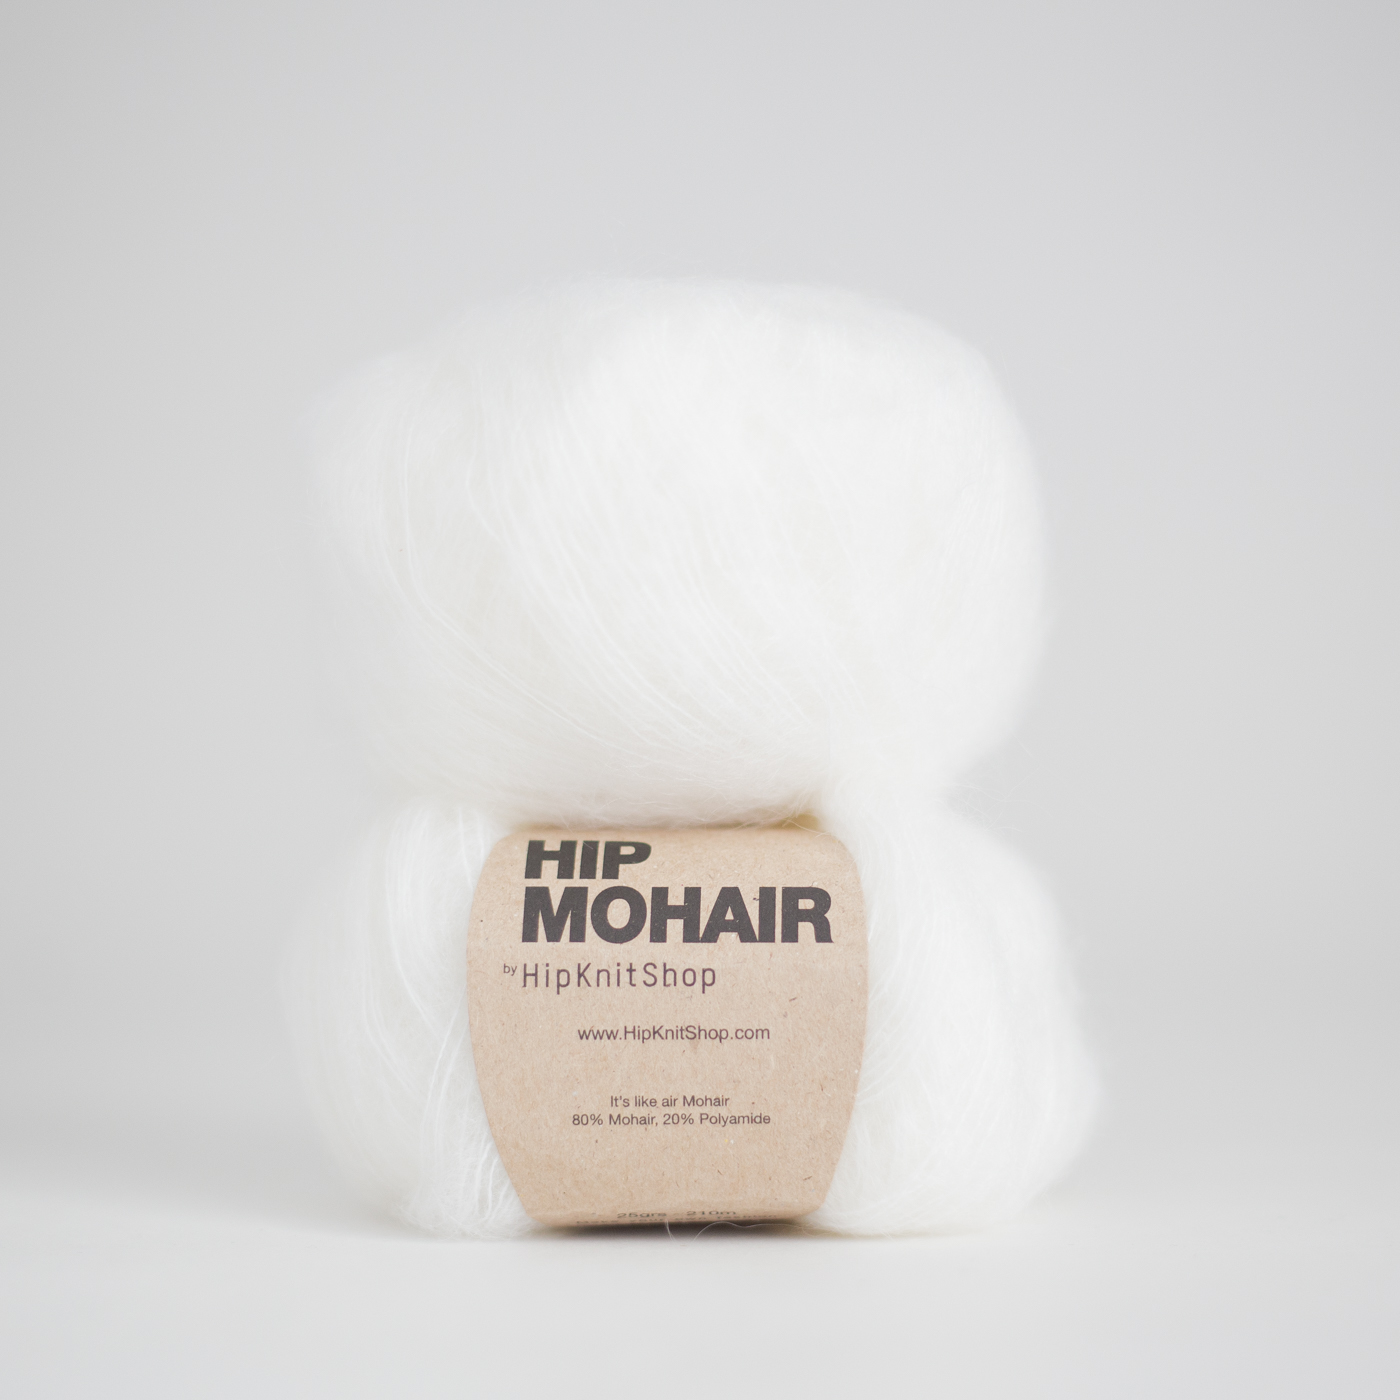 Hip Mohair - Cotton ball